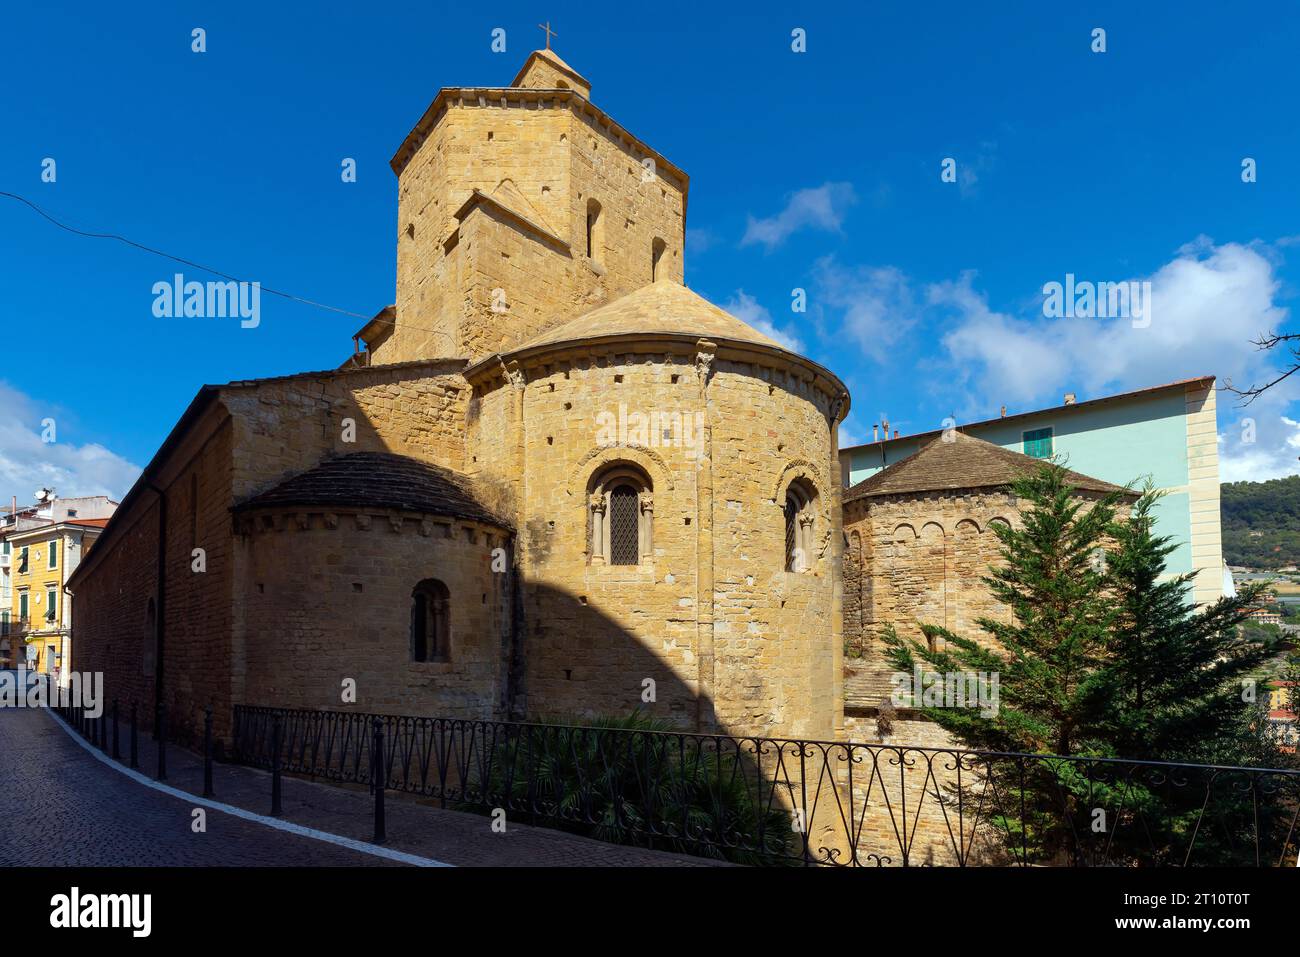 Catedral románica de Ventimiglia, dedicada a la Asunción, que data de los siglos XI - XIII. Liguria, Italia. Foto de stock